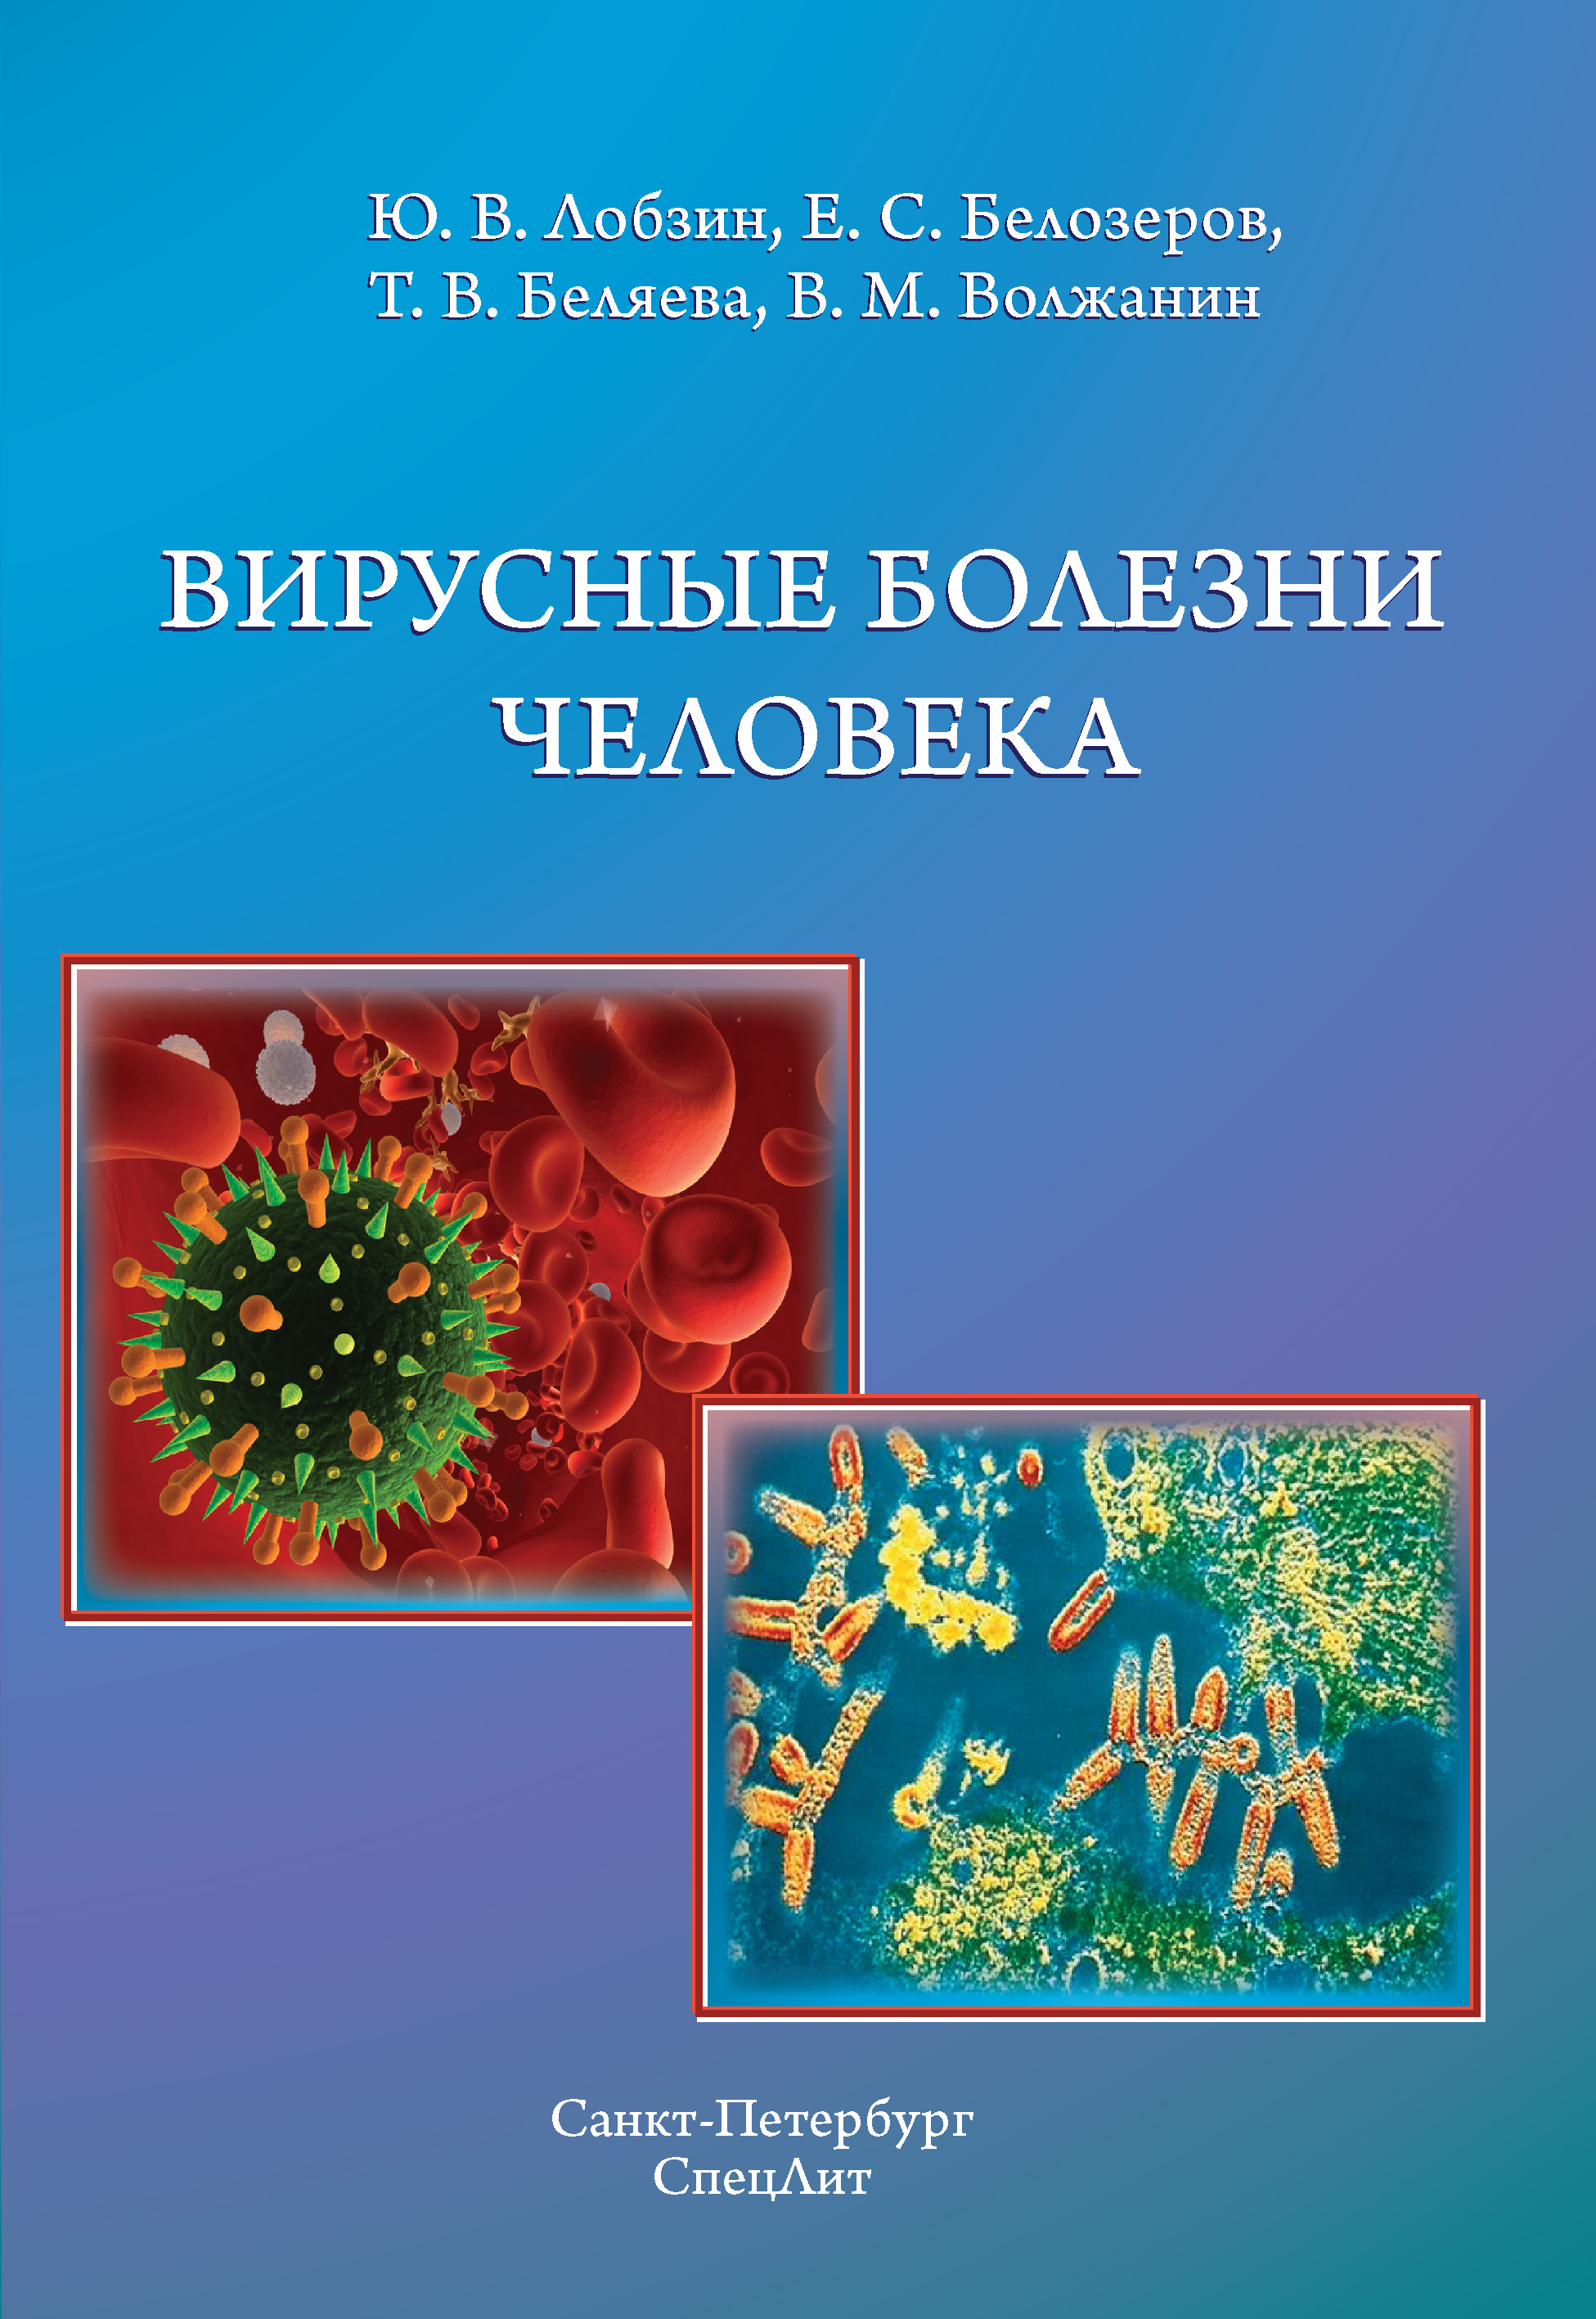 5 заболеваний вирусами. Вирусные болезни человека. Книга про вирусные заболевания. Заболевания человека книга. Вирусные инфекционные заболевания.